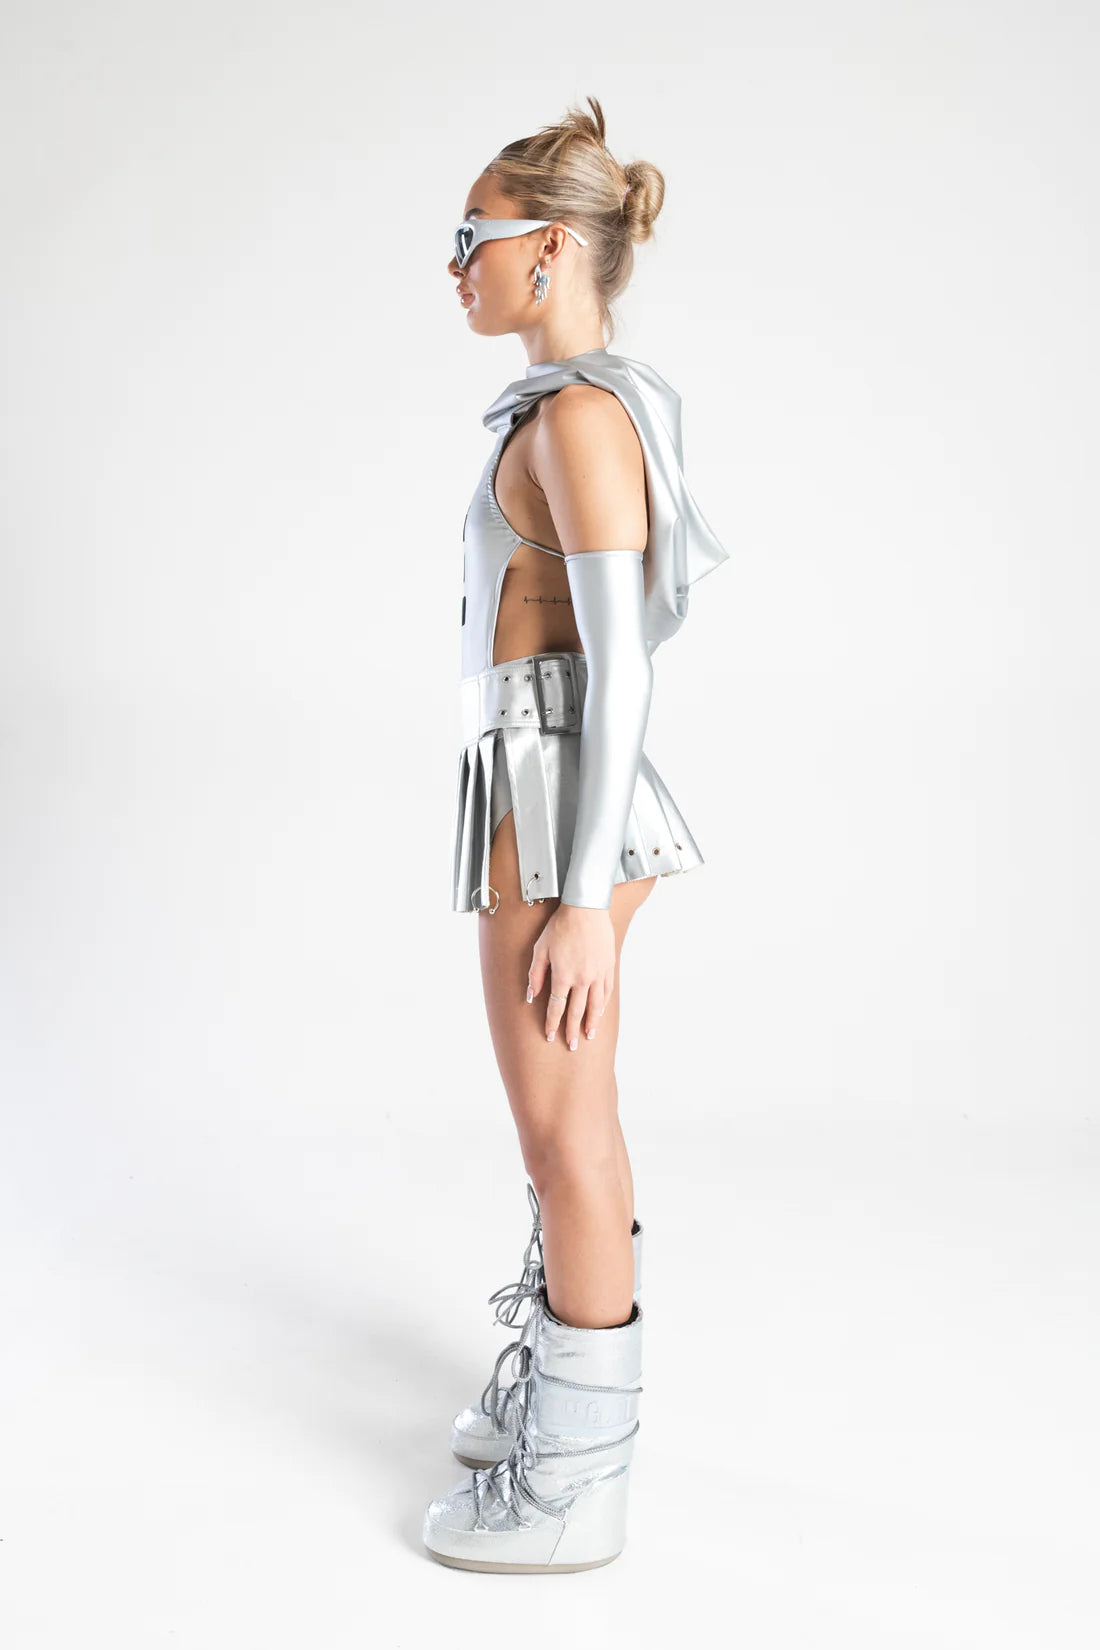 zijkant meisje met zilveren vinyl outfit, techno outfit